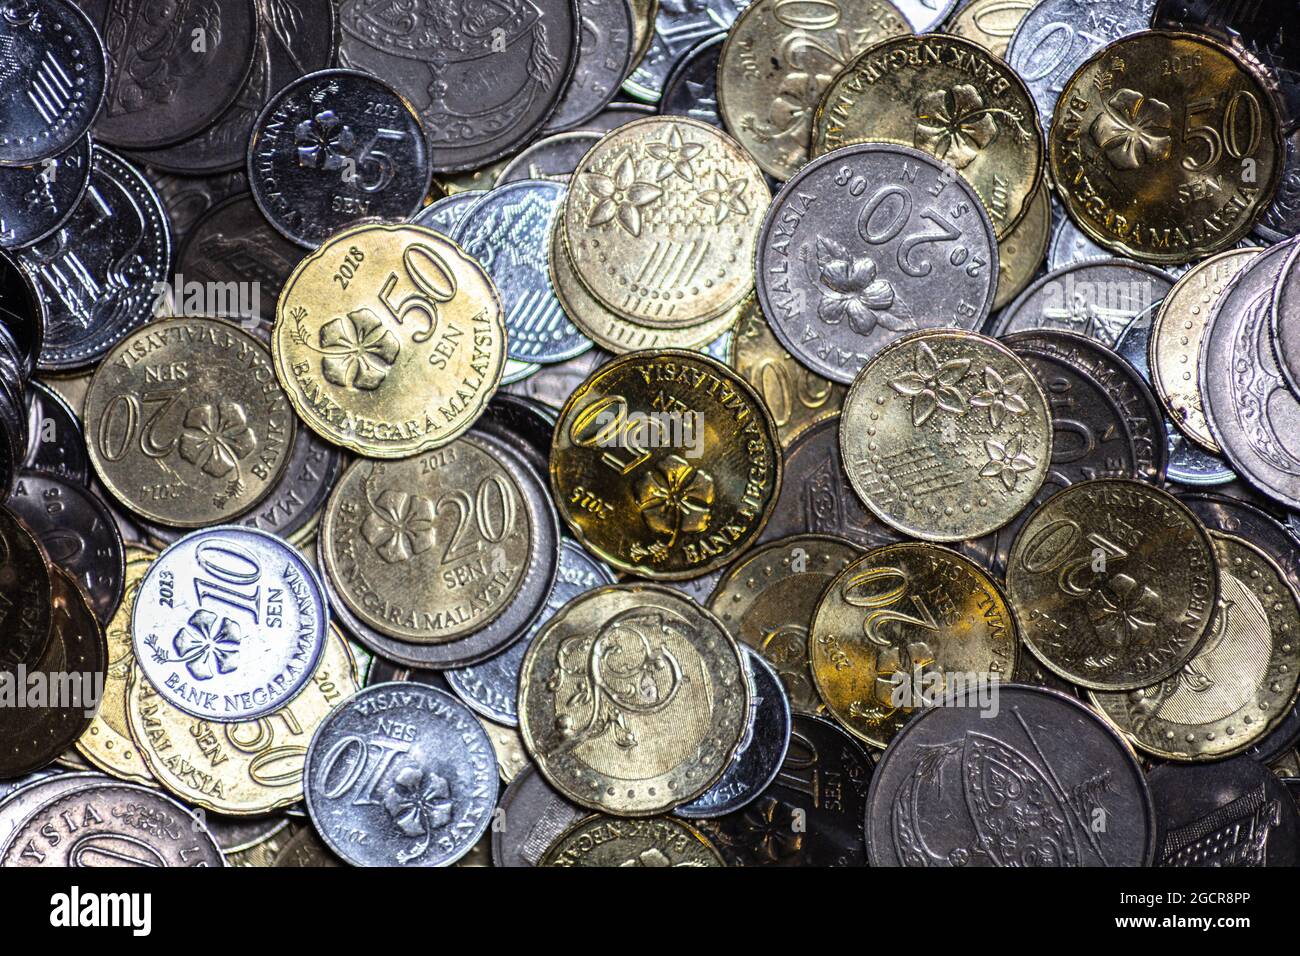 Nahaufnahme der malaysischen Ringgit-Cents. Die Münzen der malaysischen Währung. Bank Negara Ausgabe 5, 10, 20 und 50 sens. In der Mitte eine goldene fünfzig Cent c Stockfoto